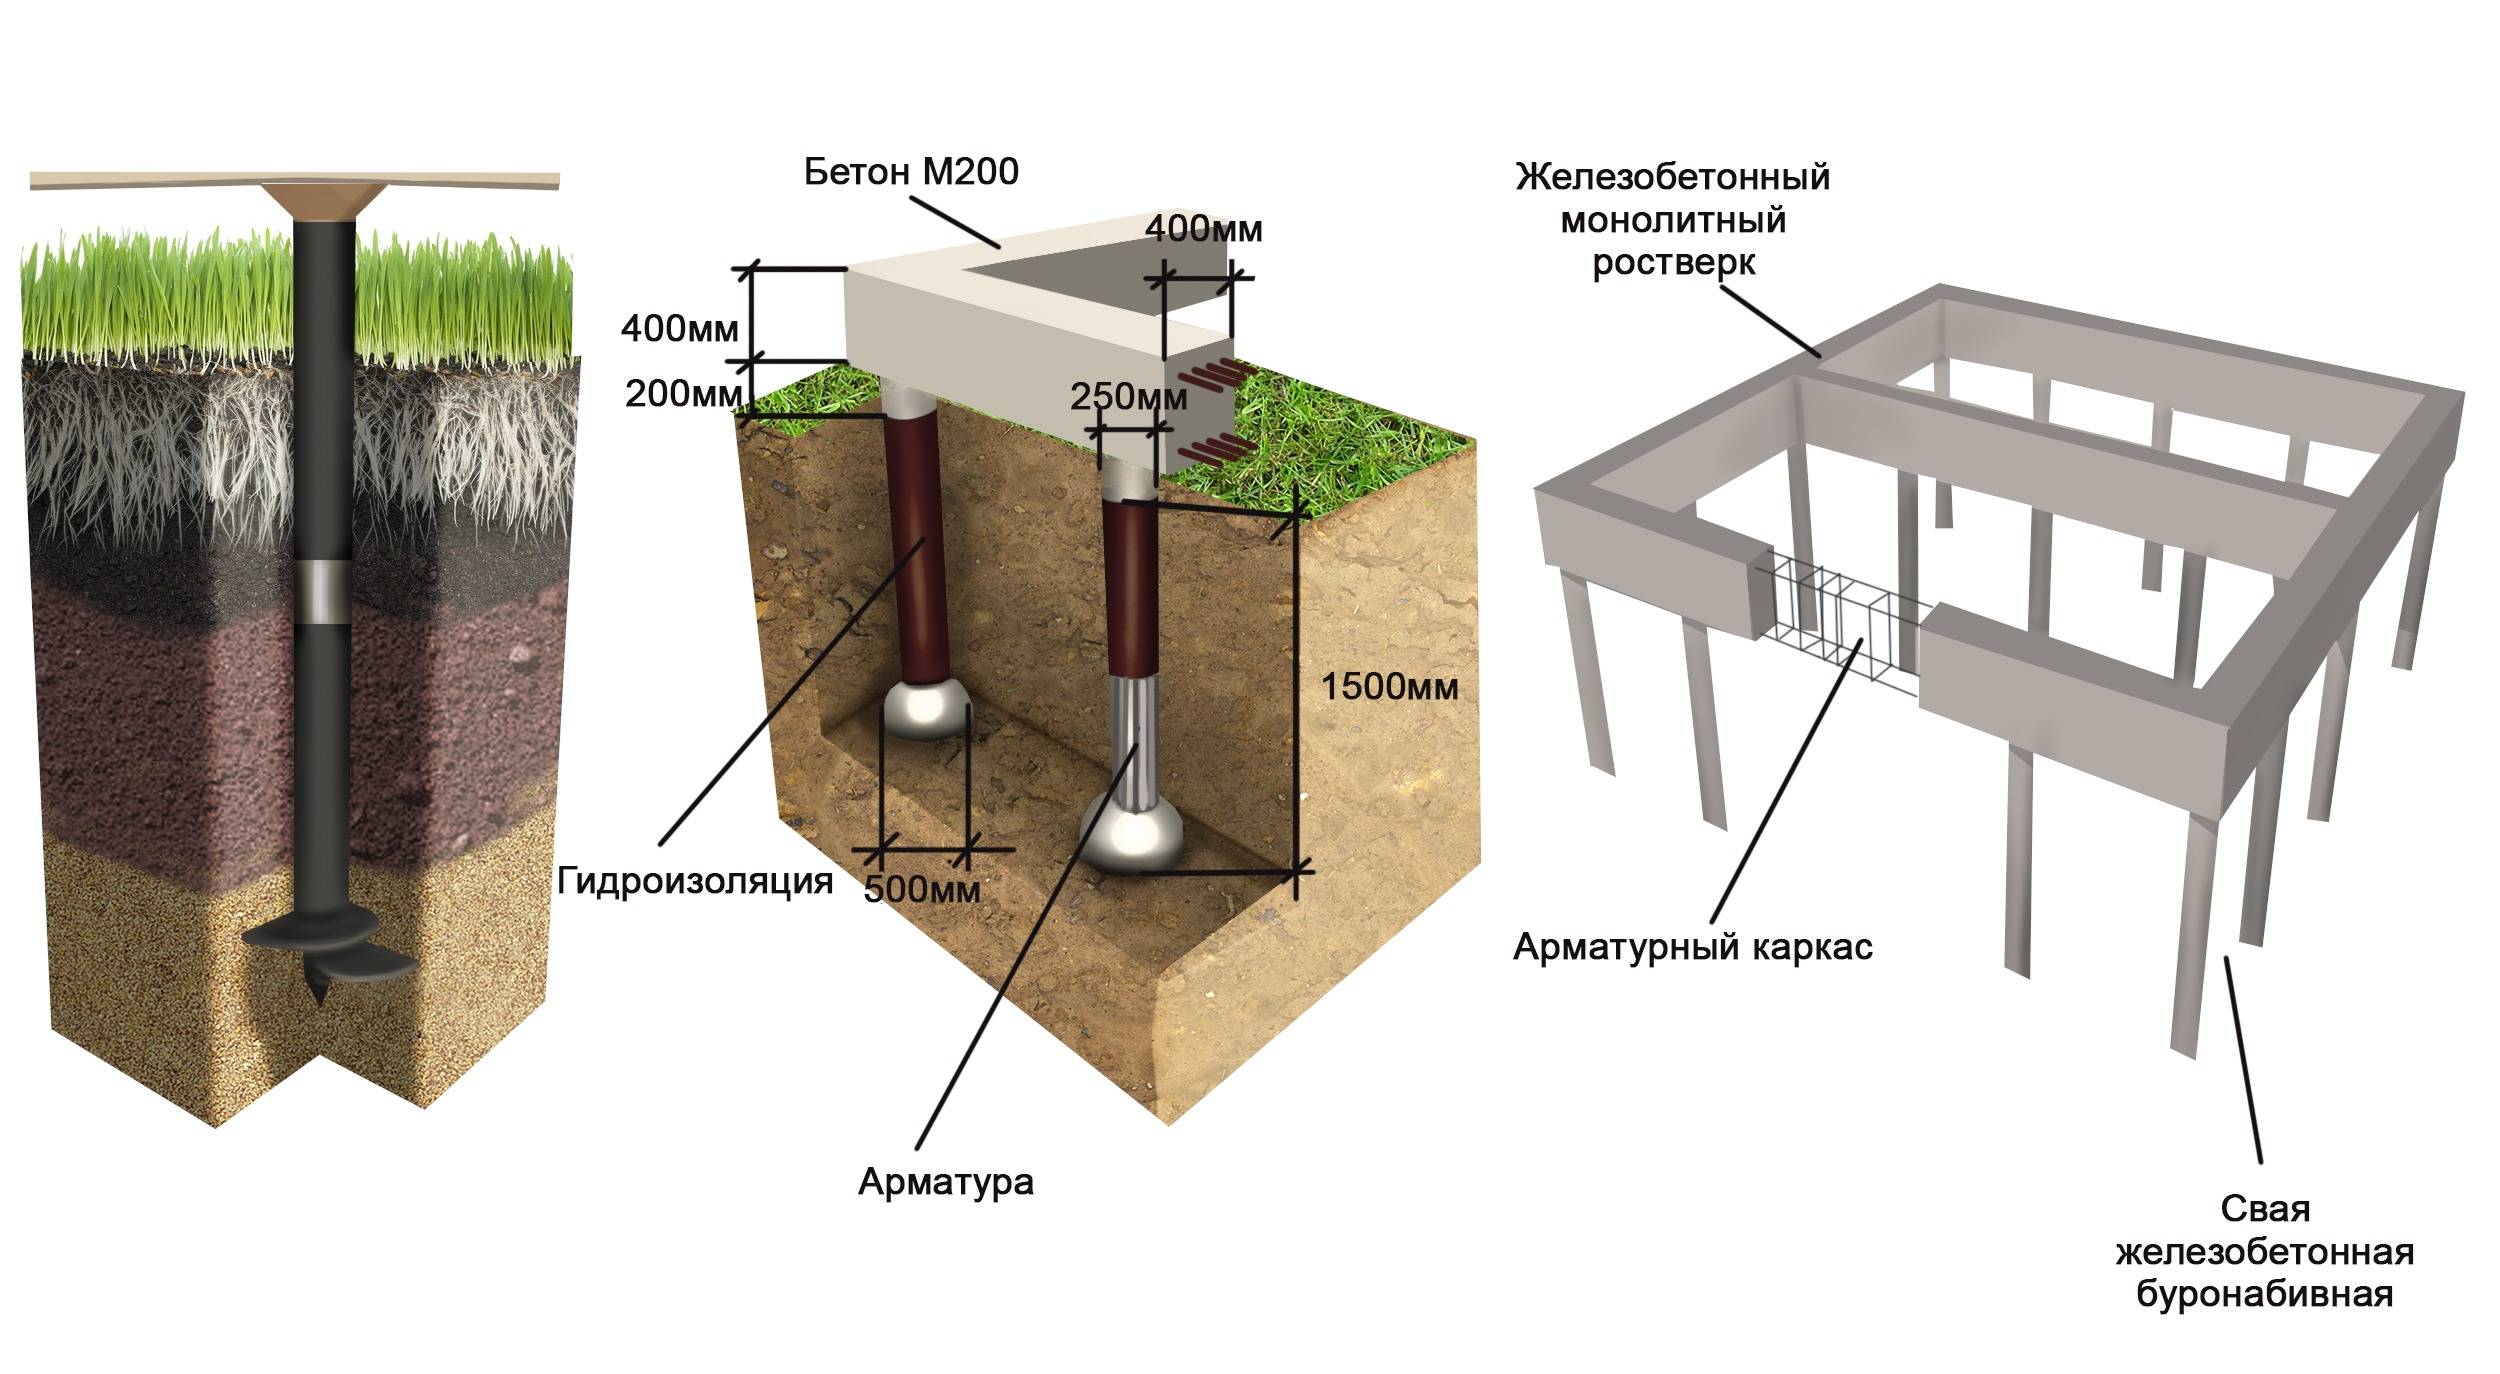 Свайный фундамент под кирпичный дом (одноэтажный, двухэтажный) | металлический ростверк на бетонных сваях